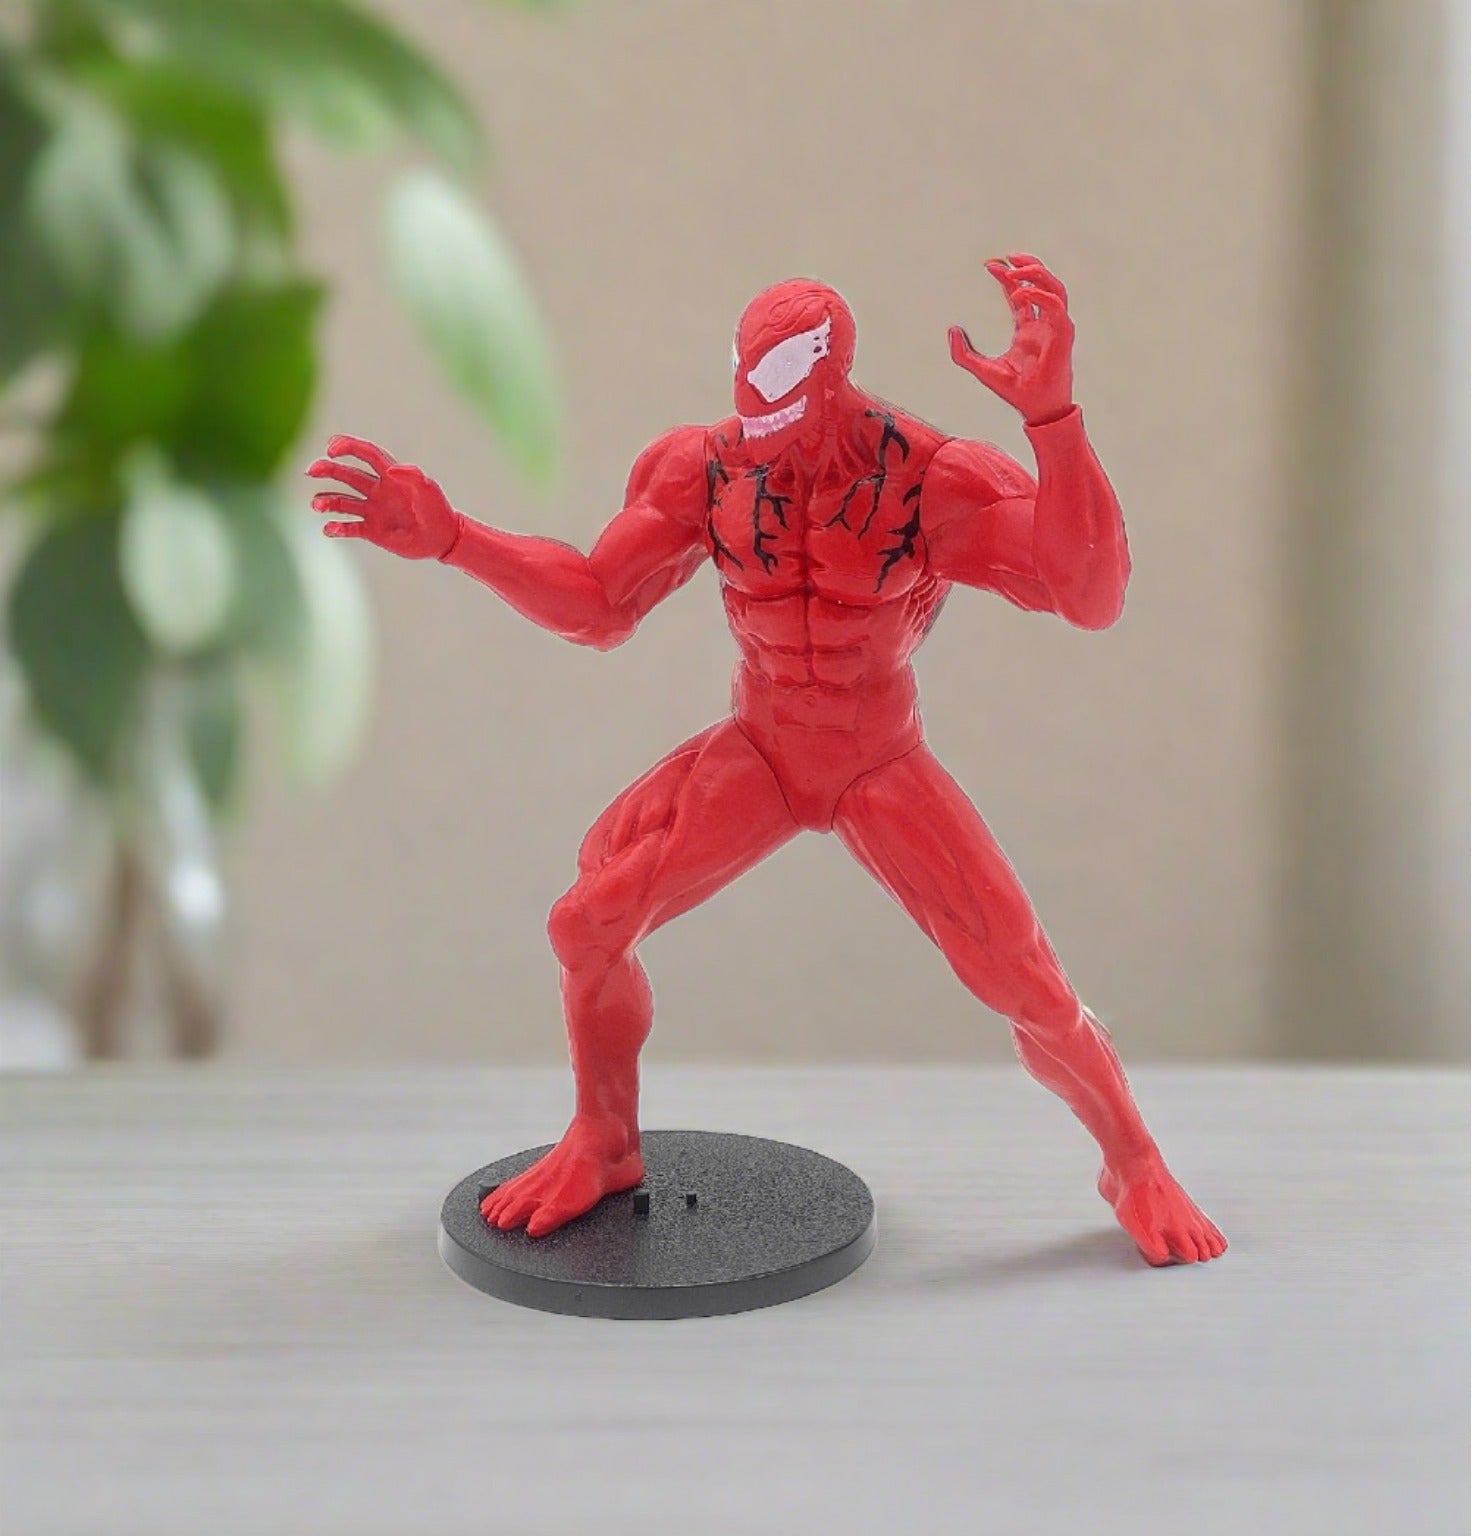 Marvel Carnage Venom Attacking Mode Model 2 Action Figure |22CM|